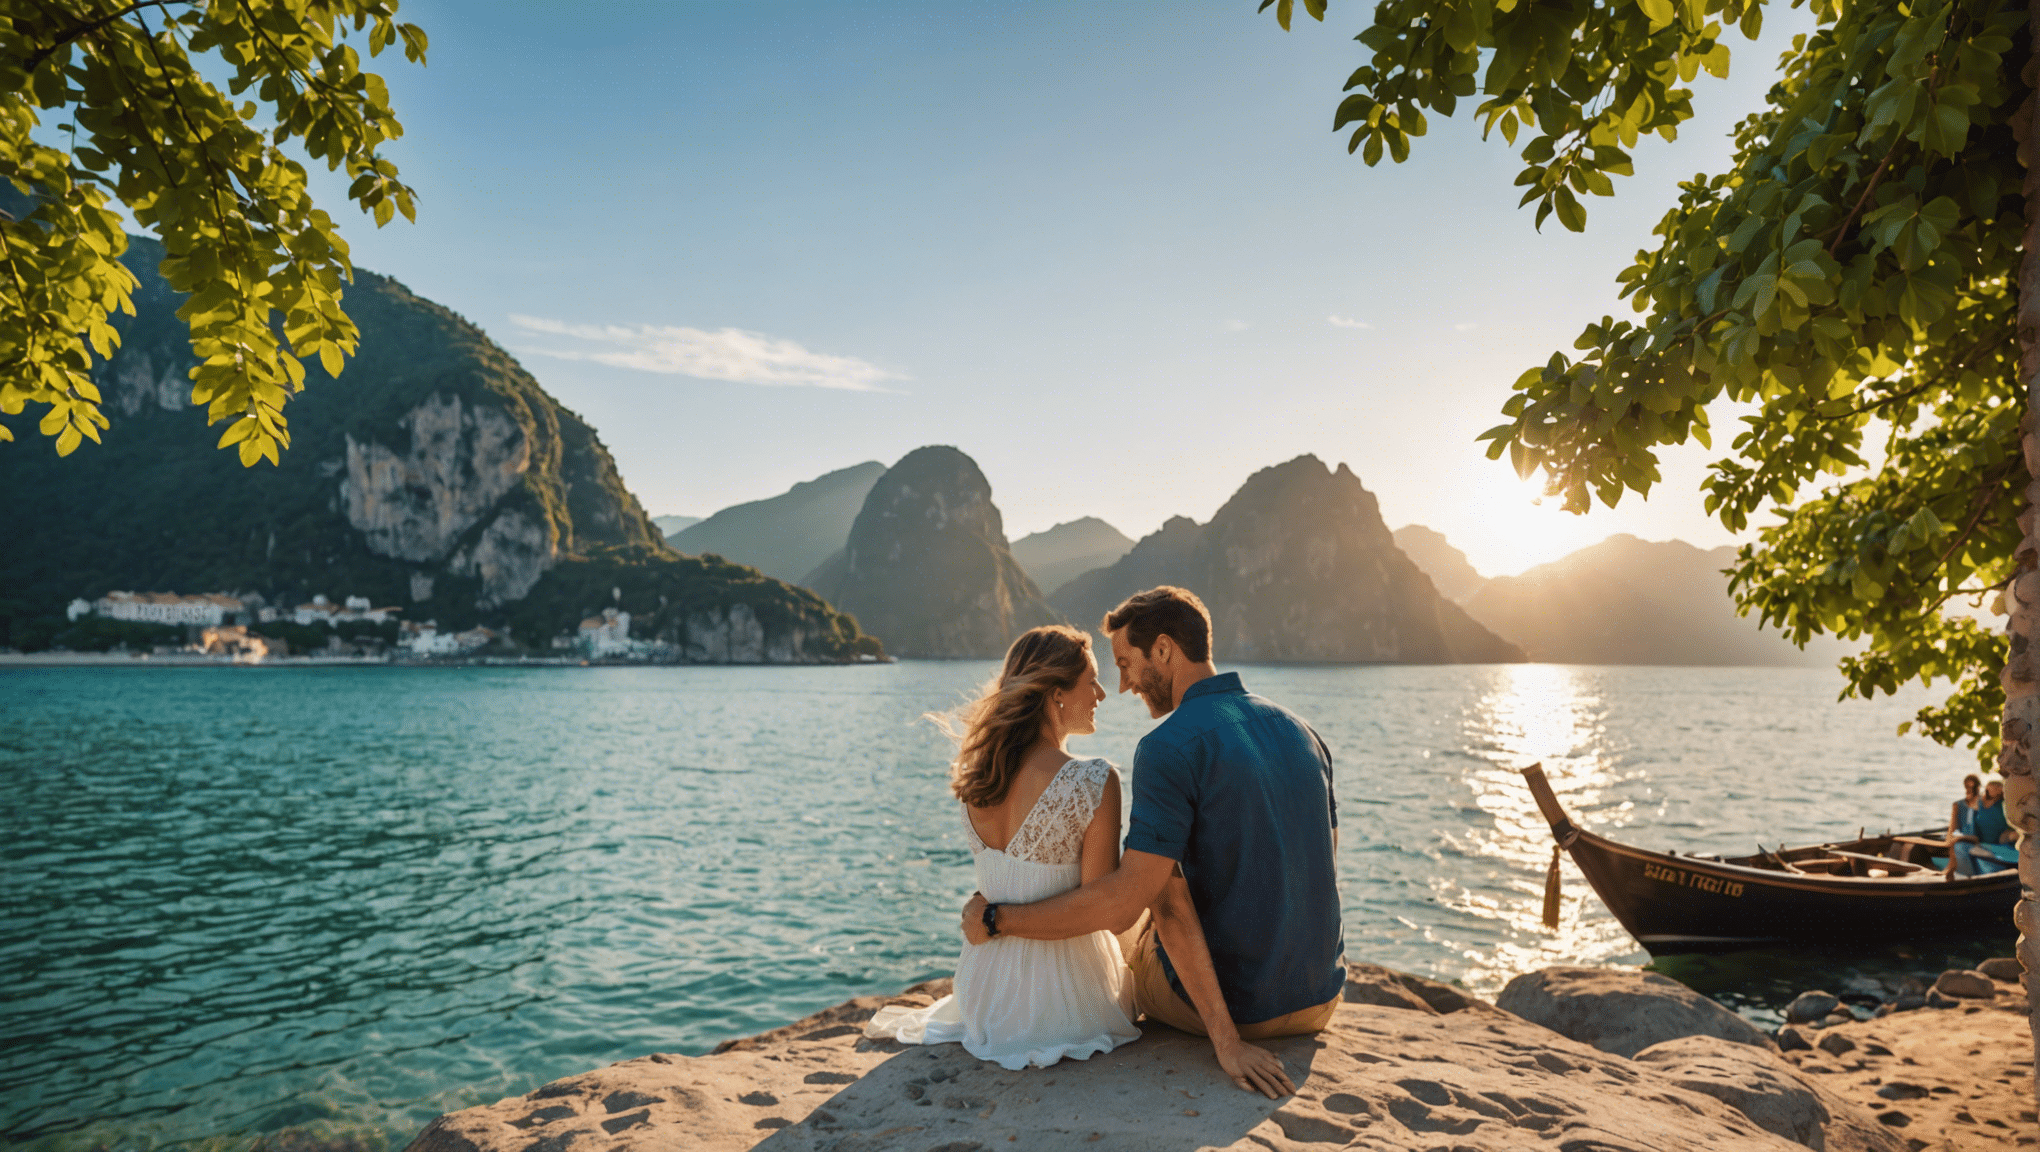 Entdecken Sie mit unserer Auswahl der besten Reiseziele die perfekten Reiseziele für einen romantischen Kurzurlaub zu zweit.